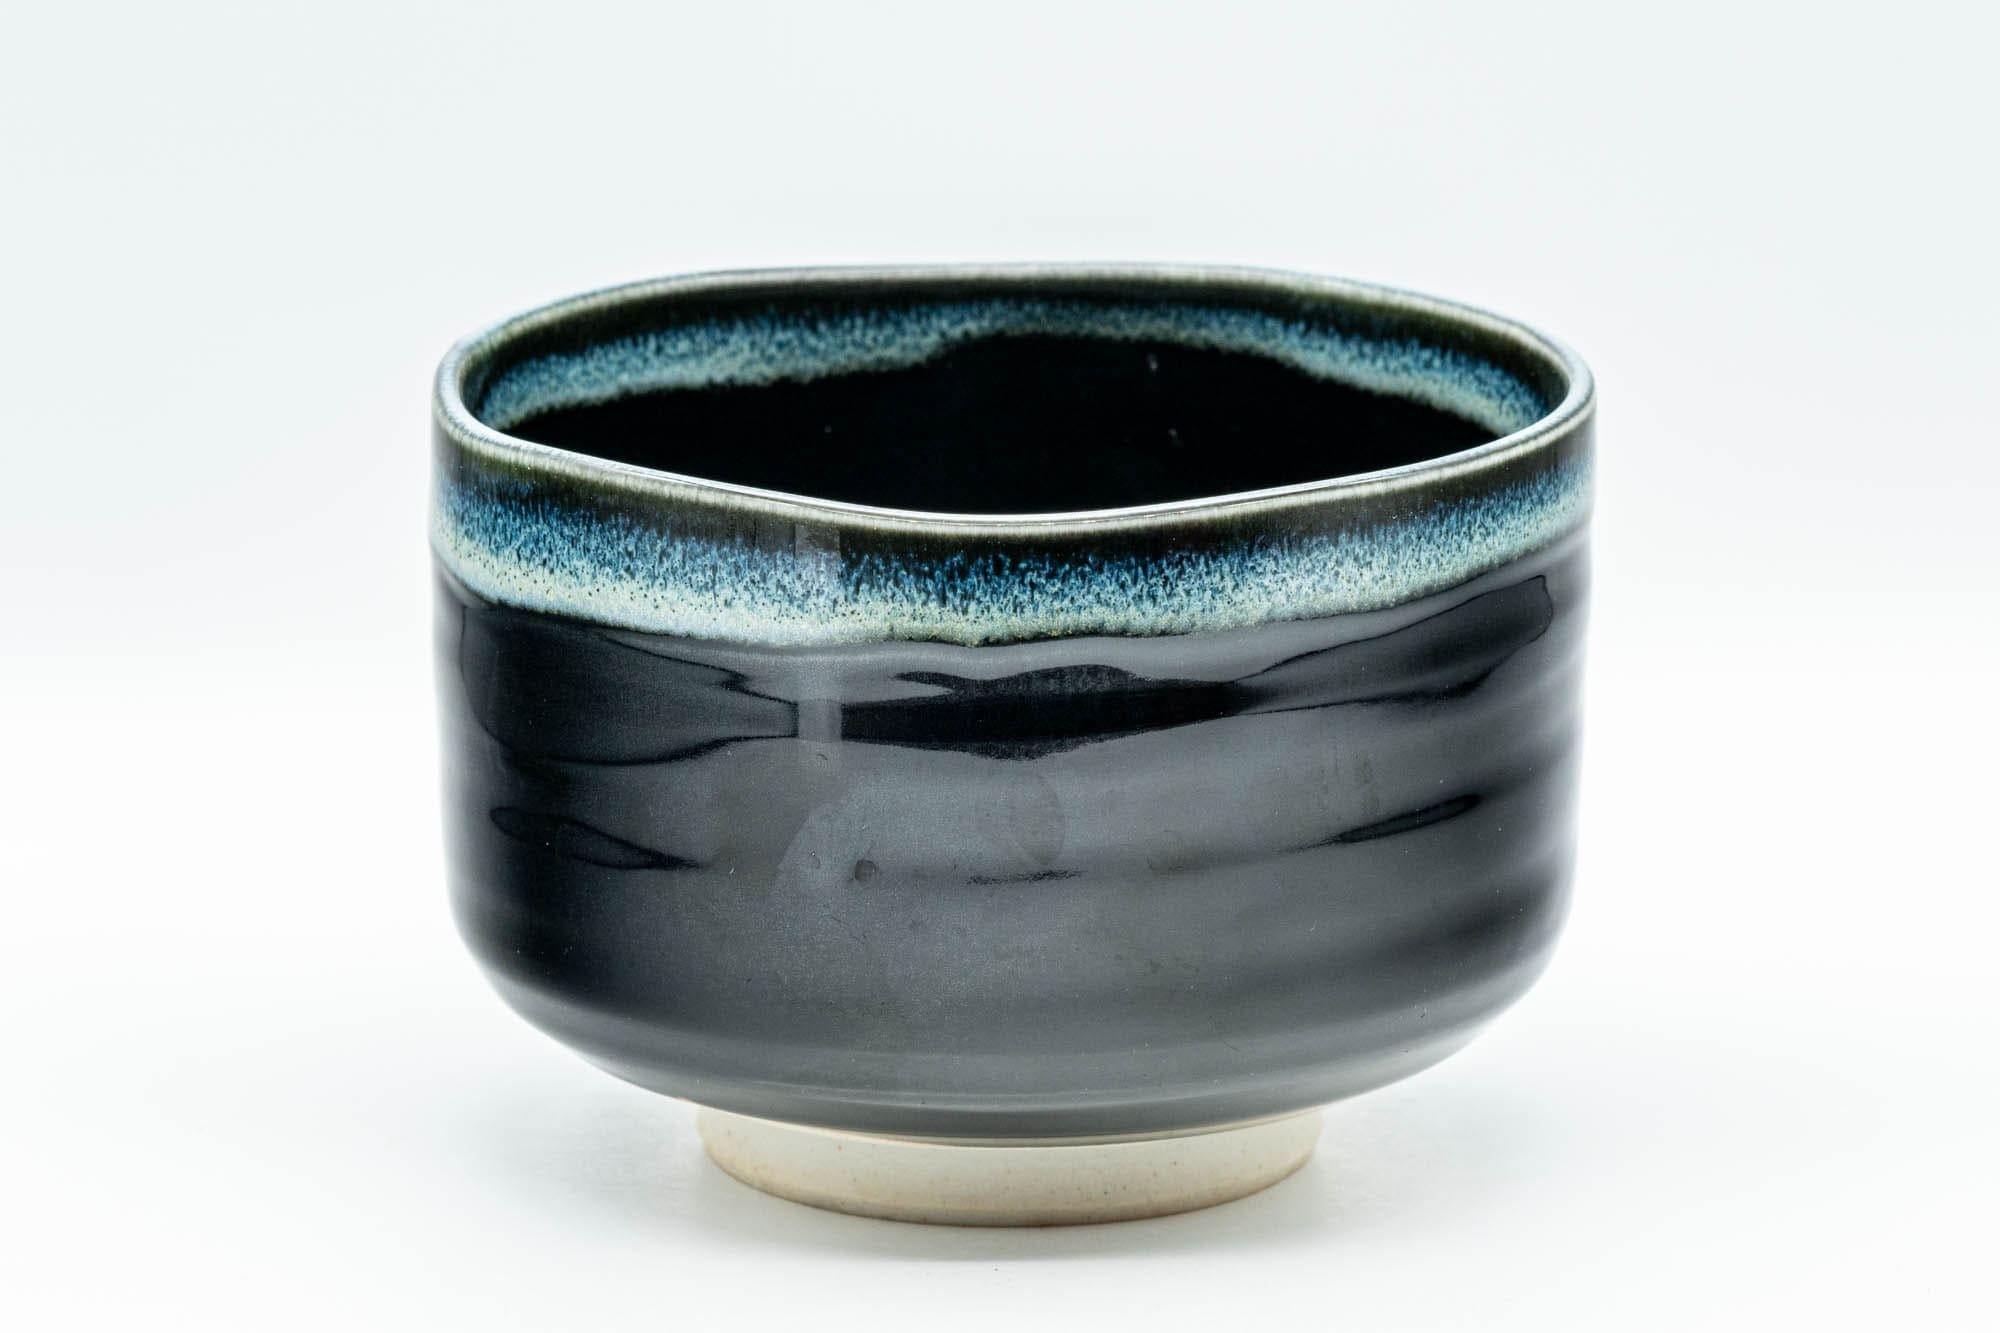 Japanese Matcha Bowl - Jet Black and Blue Drip-Glazed Chawan - 500ml - Tezumi